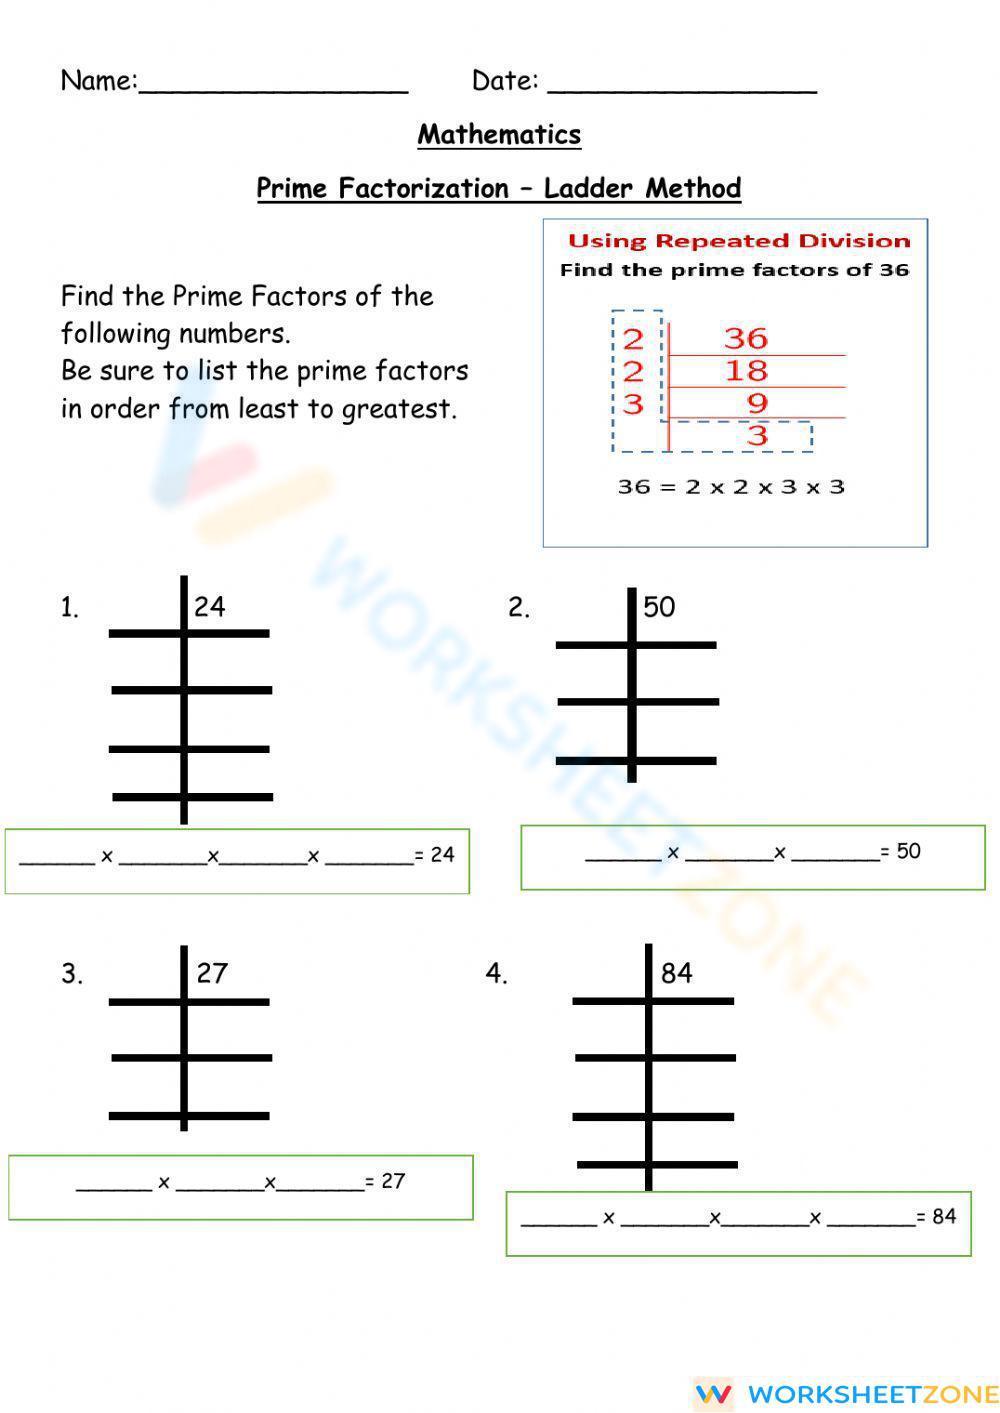 Prime Factorization - Ladder Method Worksheet